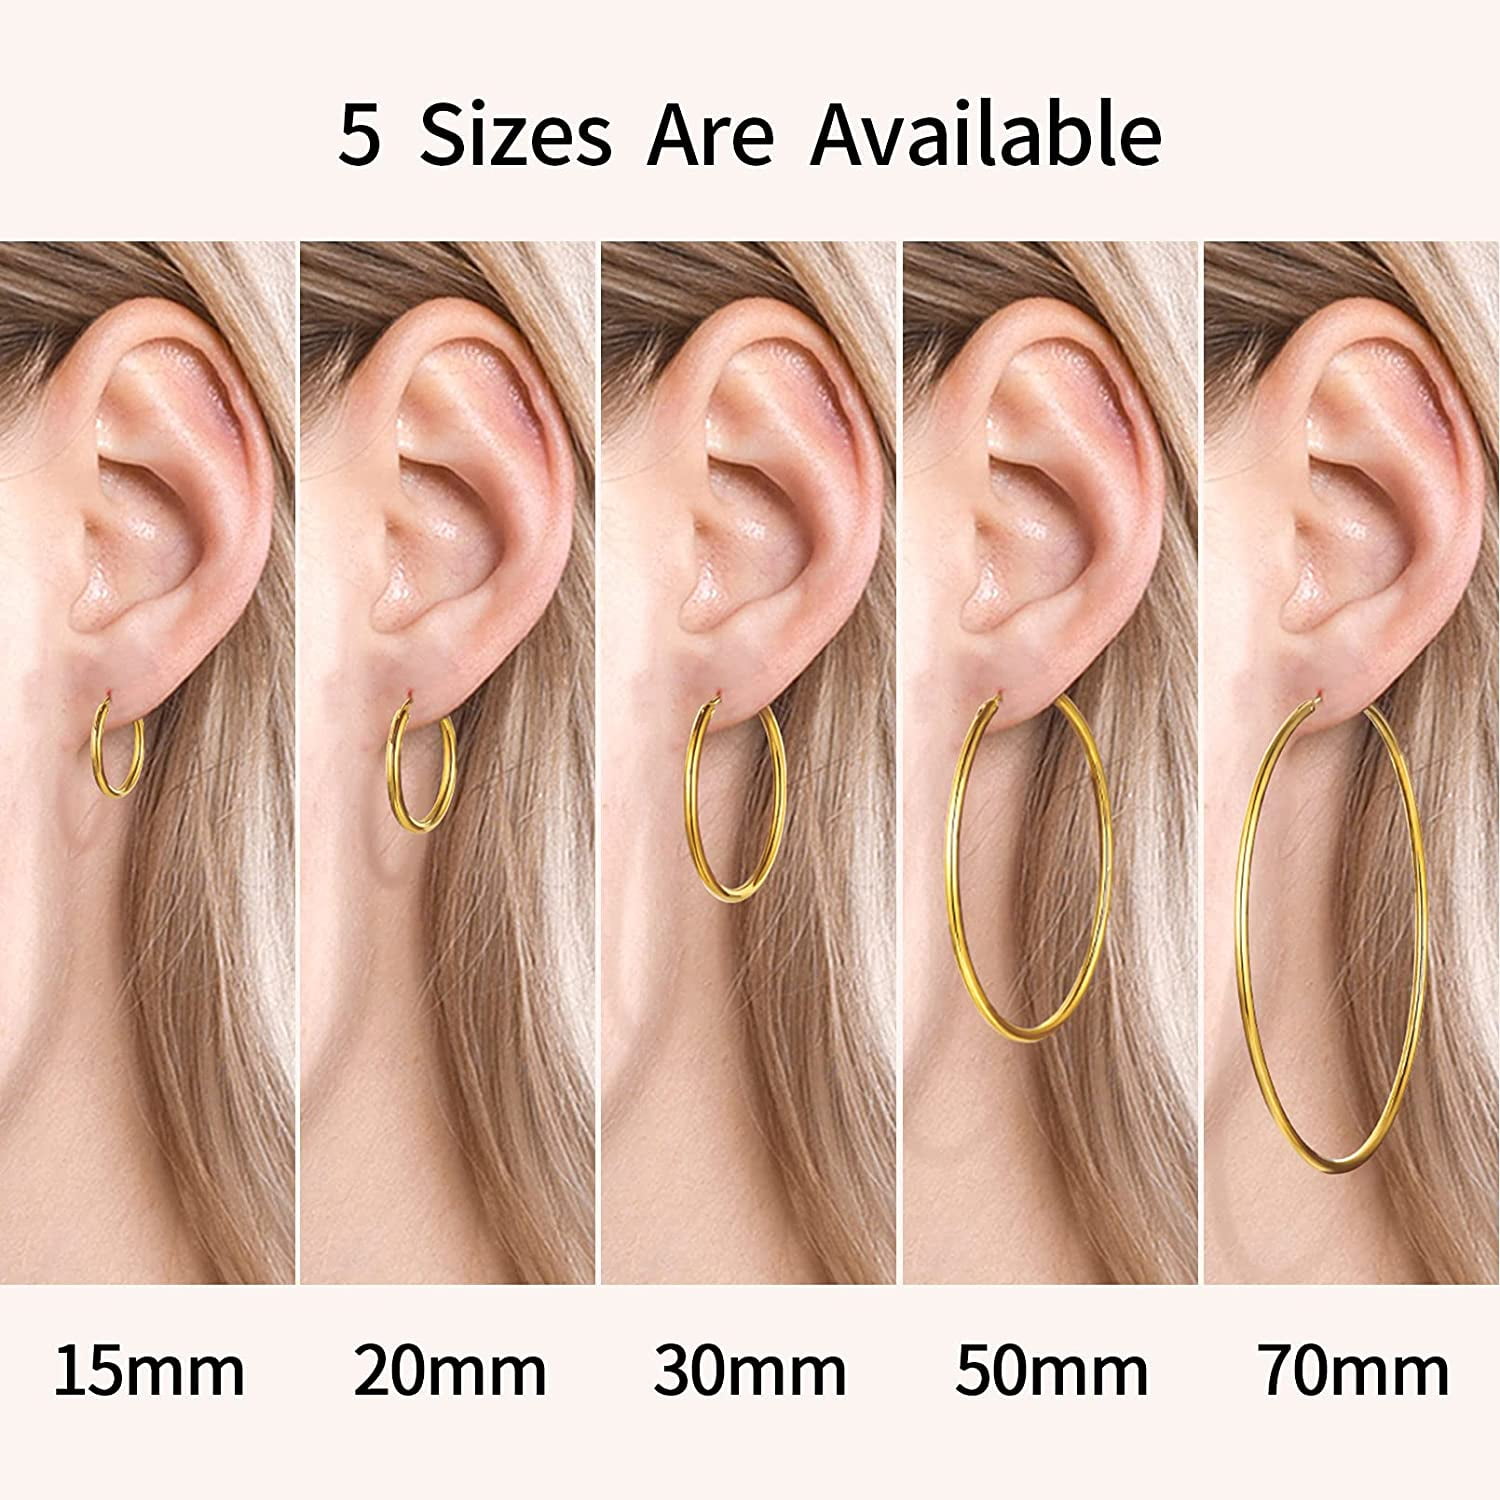 Buy Medium Sized Hoop Earrings, Gold Hoops Earrings, Small Hoop Earrings,  Sterling Silver Earrings, Hoop Earrings for Women, Gift for Her Online in  India - Etsy